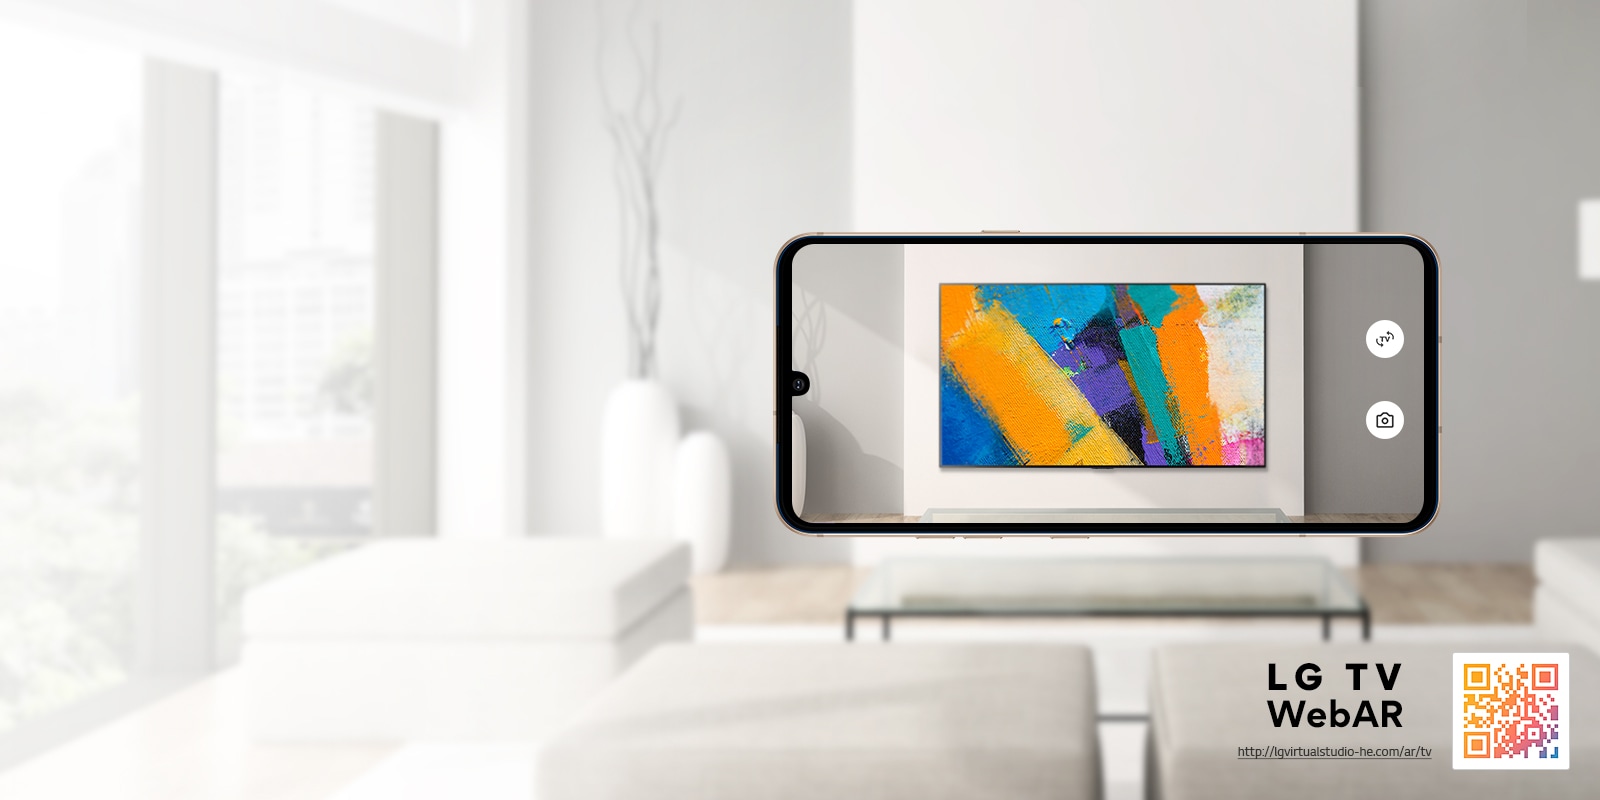 Toto je simulovaný obrázok aplikácie Web AR LG OLED TV. Obrázky z mobilných telefónov sa v minimalistickom priestore prekrývajú. Vpravo dole je QR kód.